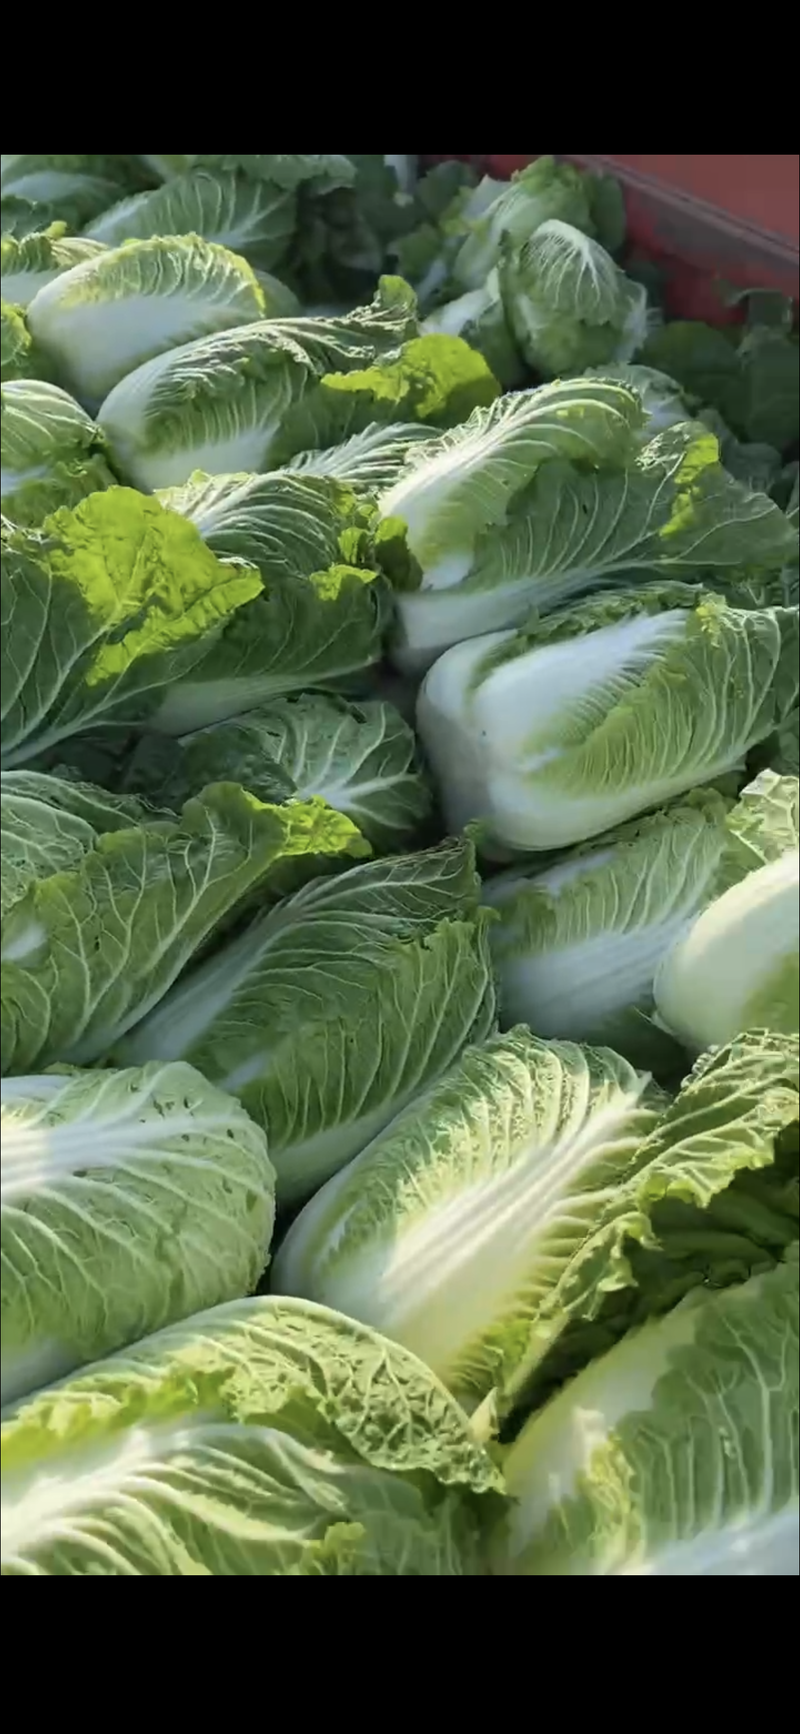 白菜夏邑青杂三号白菜大量供应中保质保量对接市场等